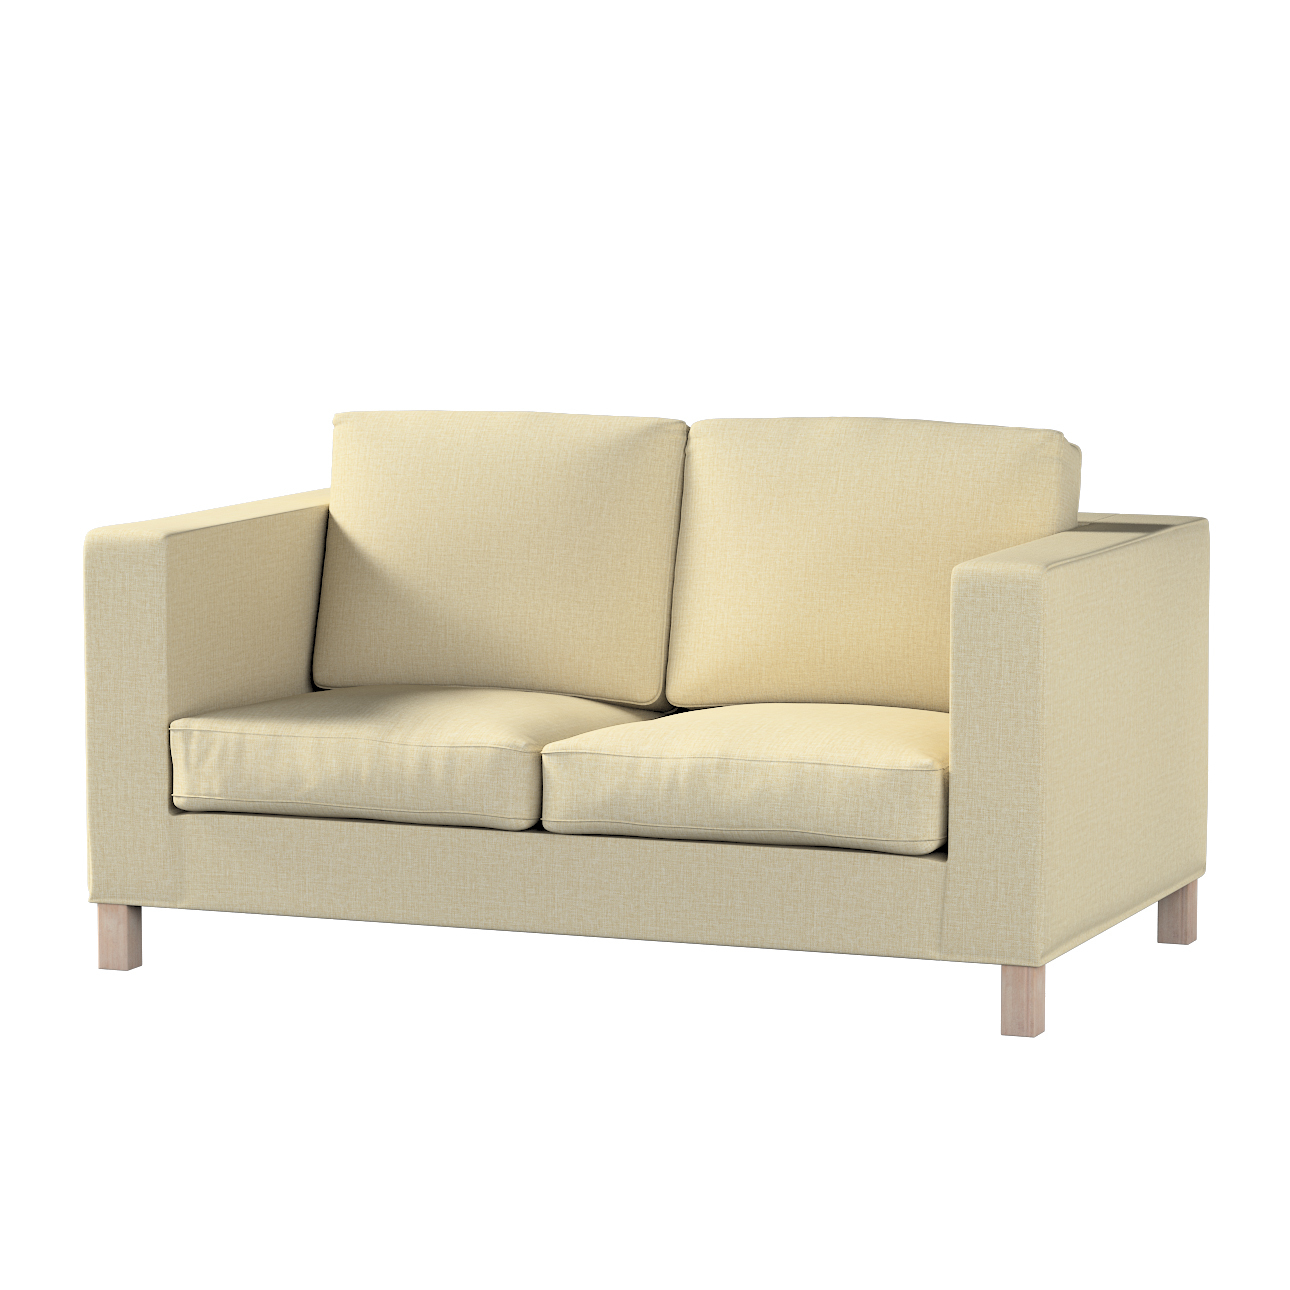 Bezug für Karlanda 2-Sitzer Sofa nicht ausklappbar, kurz, olivgrün-creme, 6 günstig online kaufen